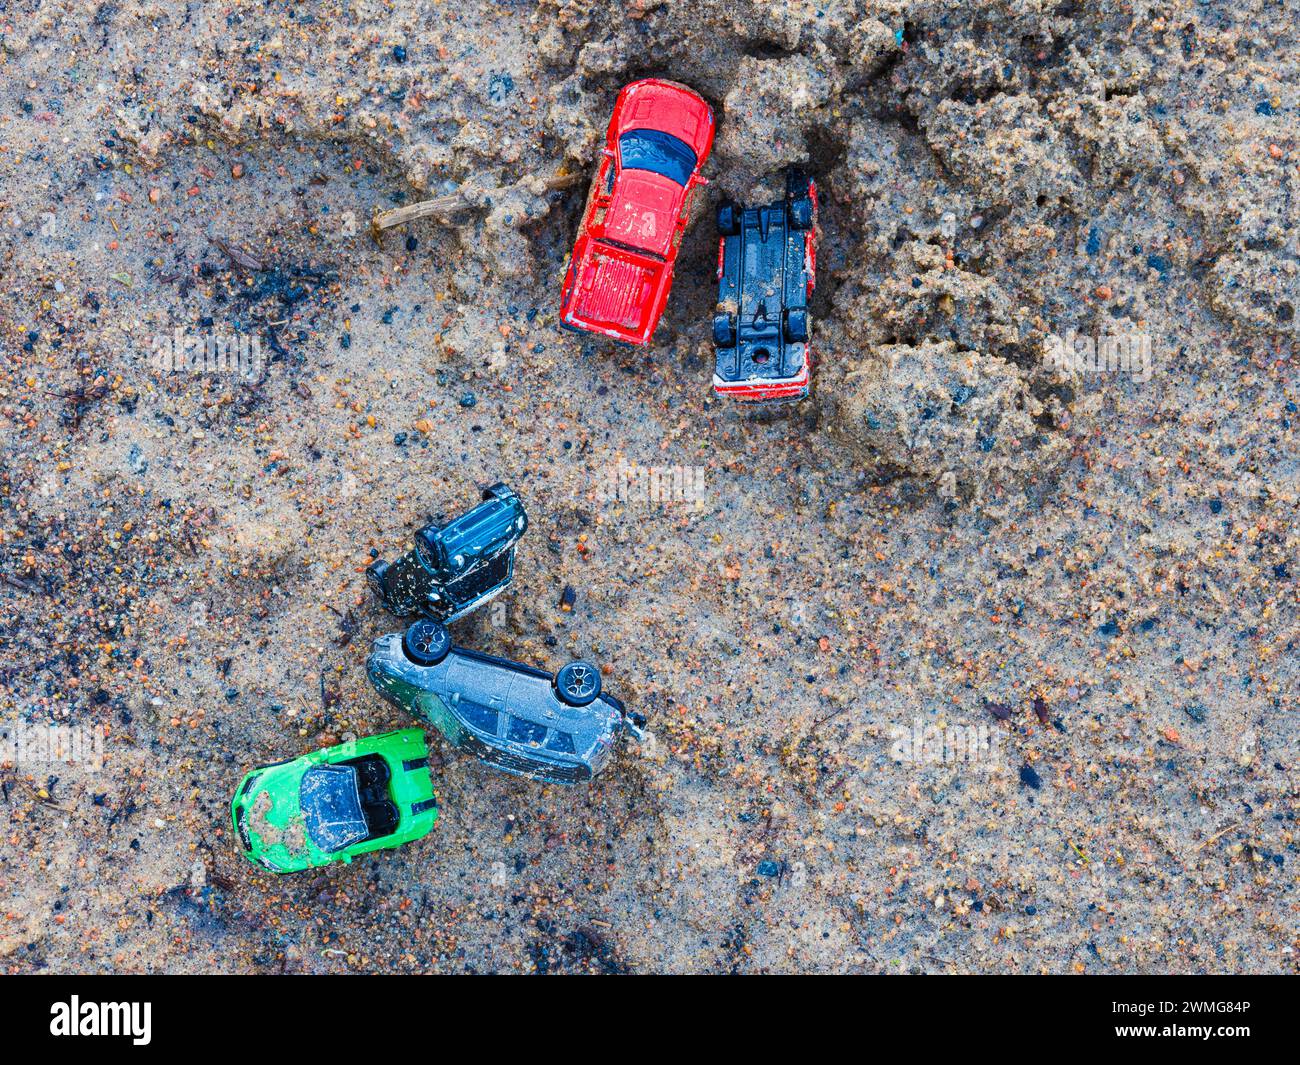 Une variété de voitures jouets colorées est dispersée sur une surface graveleuse et sablonneuse, suggérant une activité ludique. Le cliché, pris d'en haut, capture l'information Banque D'Images